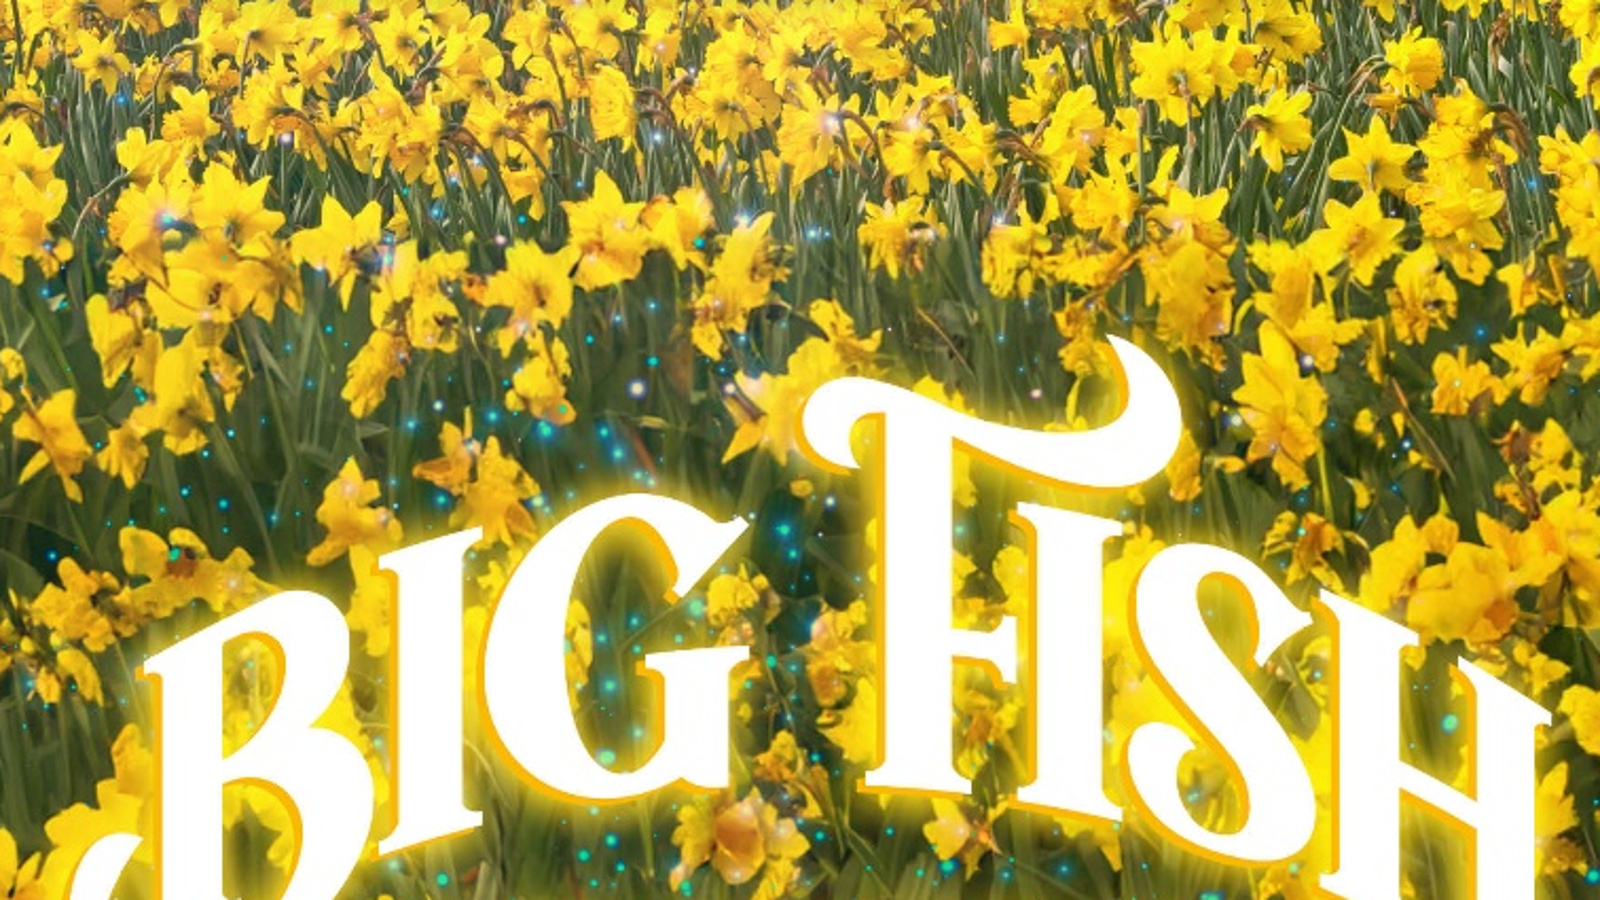 Kuvassa on keltaist narsissipeltoa ja alhaalla kaarevasti isoin kirjaimin Big fish.